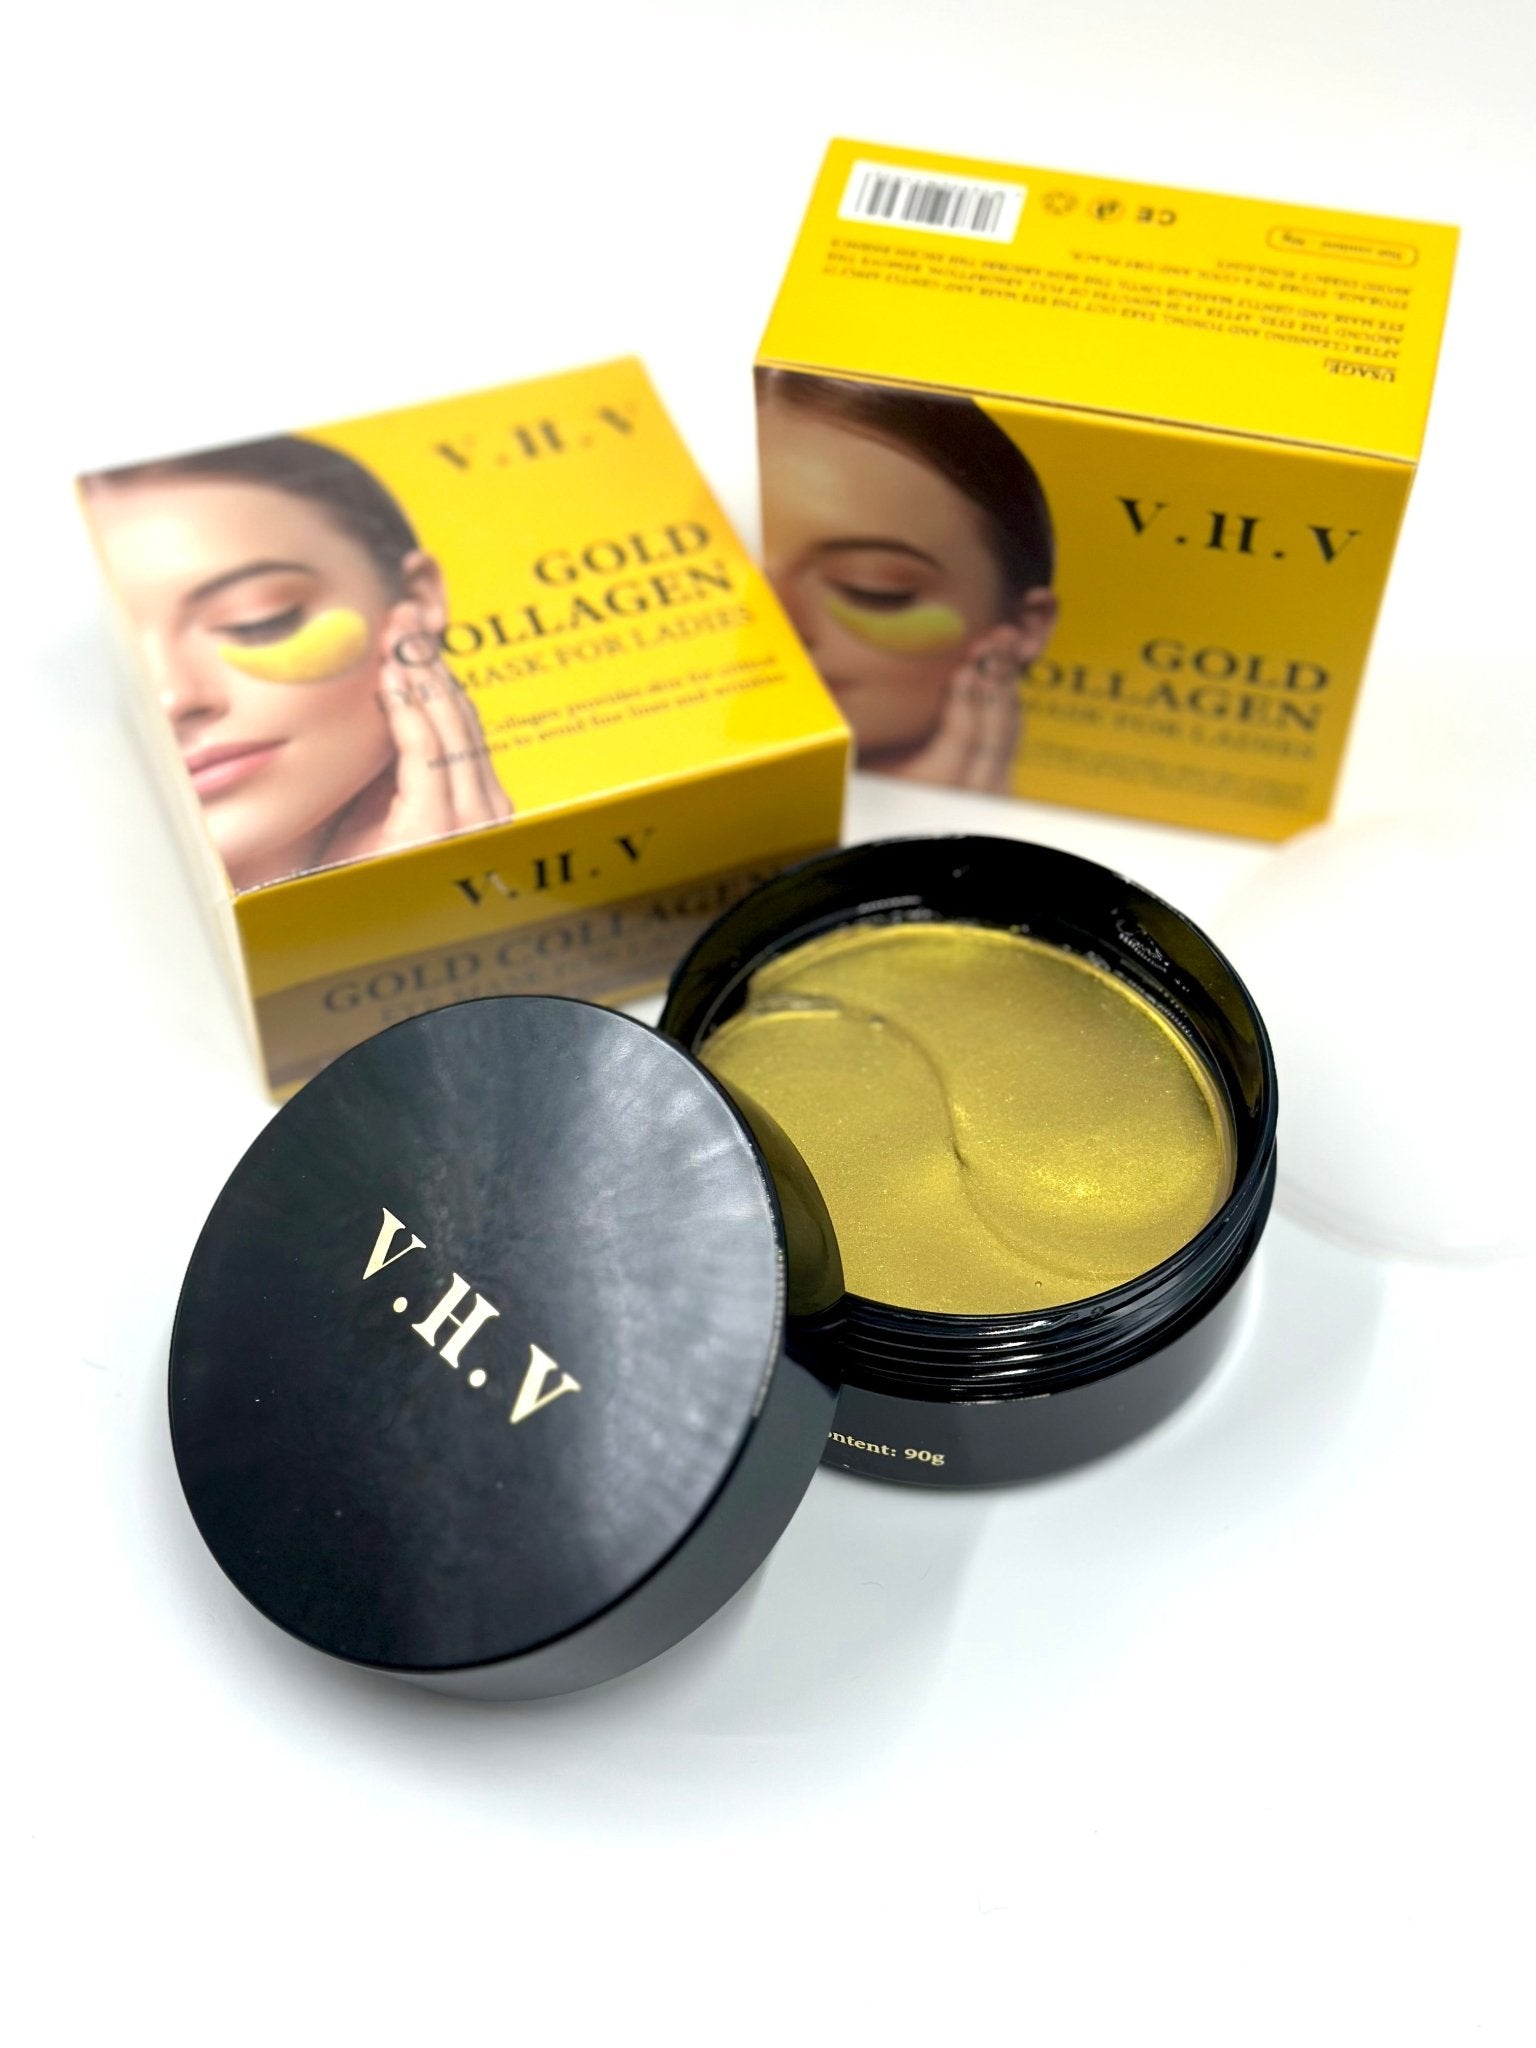 V.H.V Gold Collagen eyepatch - Χρυσή μάσκα ματιών 60 τεμάχια - BEAUTYV.H.V®The GrBazaar of Brands